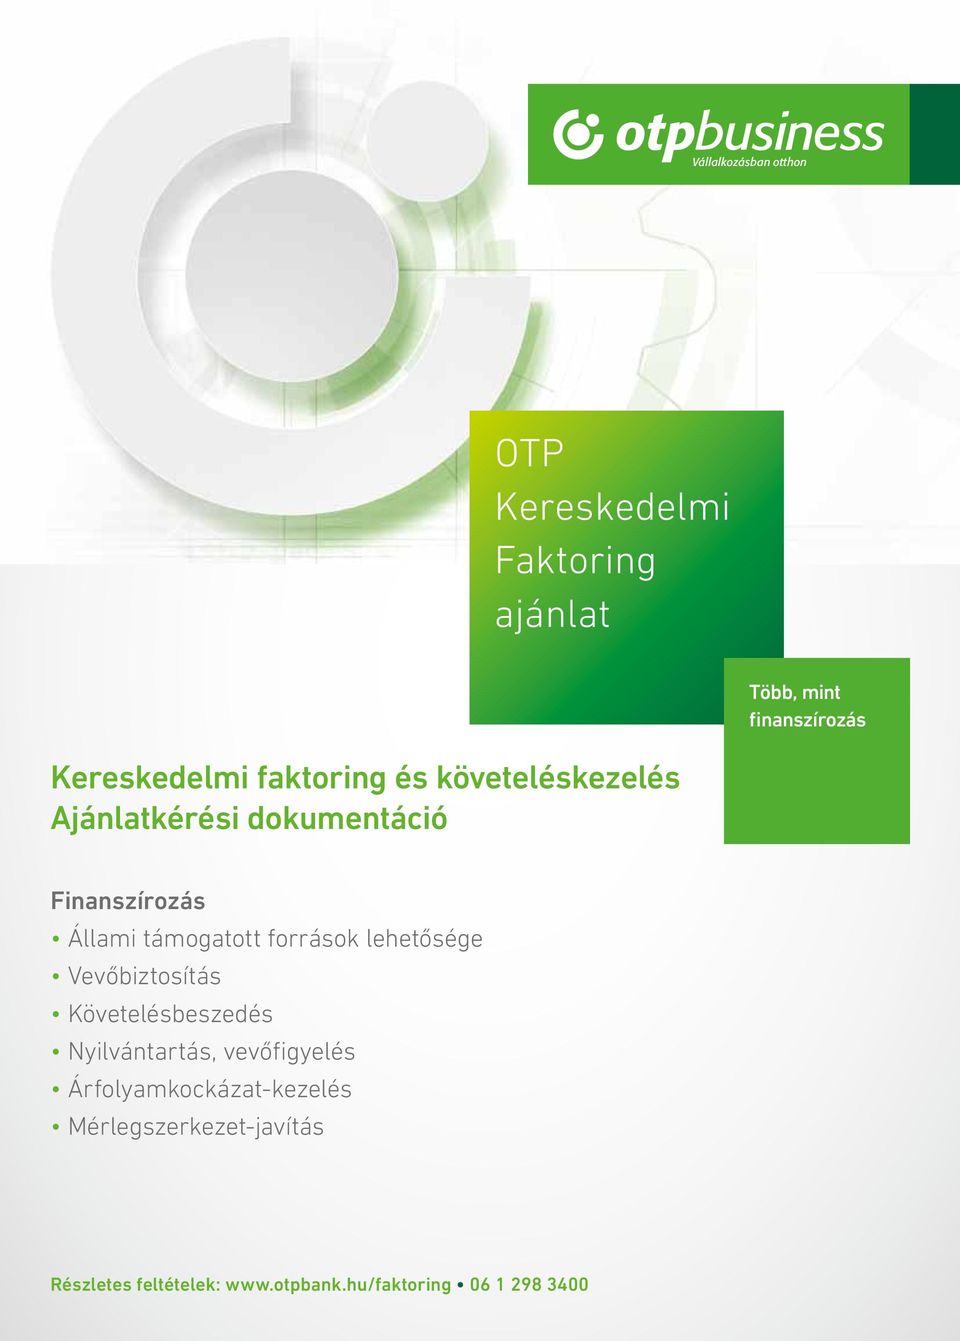 OTP Kereskedelmi Faktoring ajánlat - PDF Ingyenes letöltés